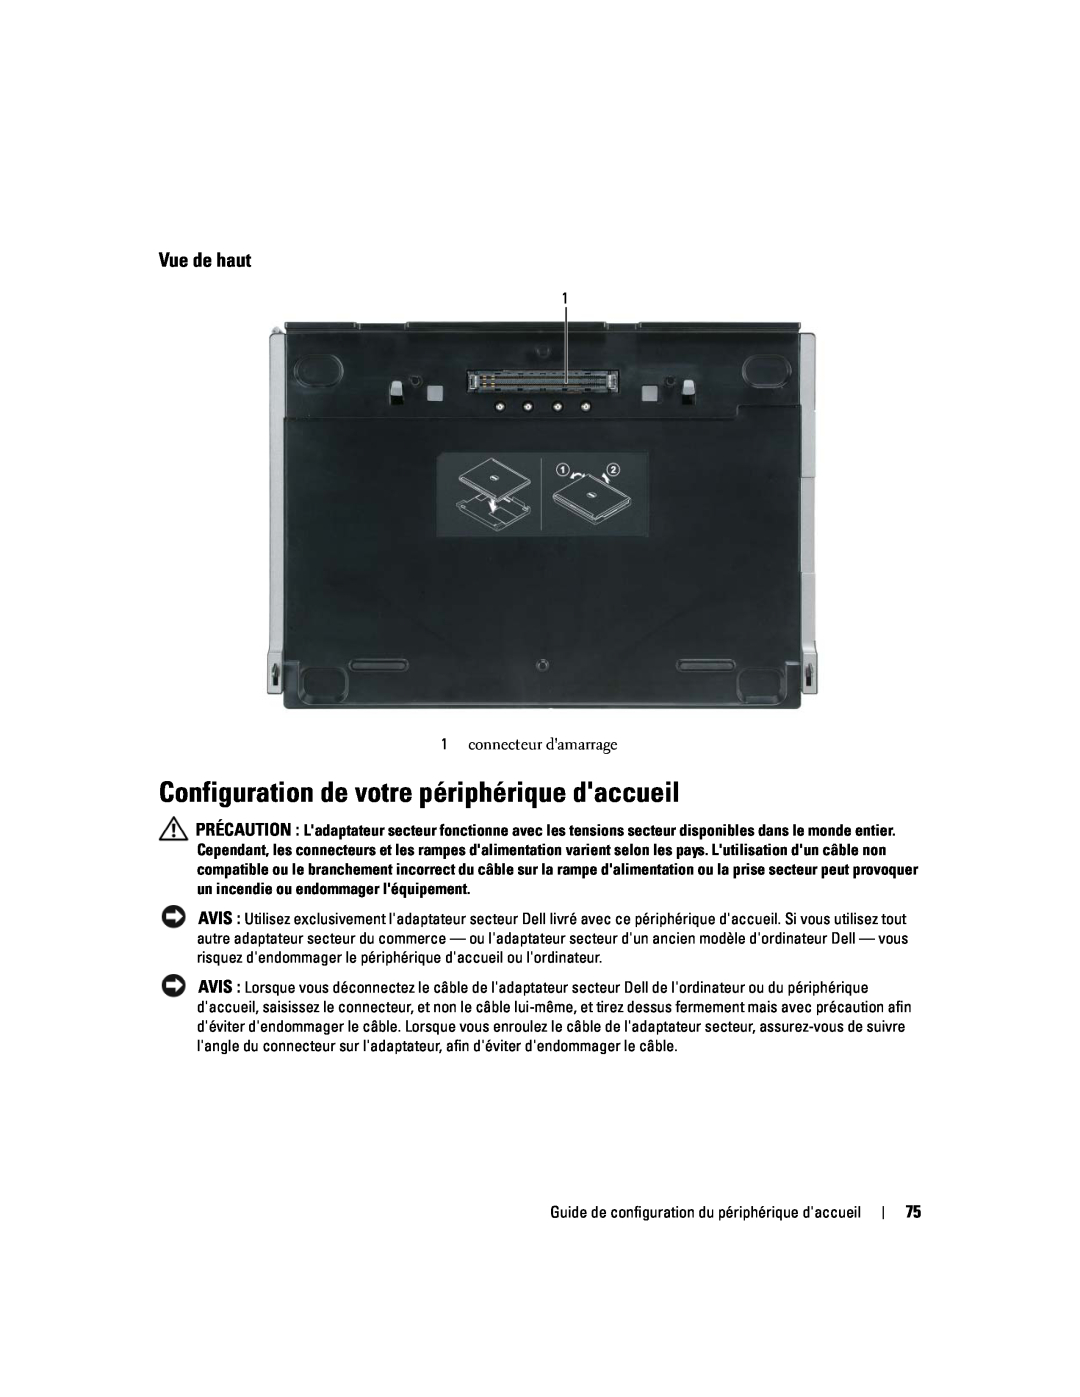 Dell Model PR09S setup guide Configuration de votre périphérique daccueil, Vue de haut 